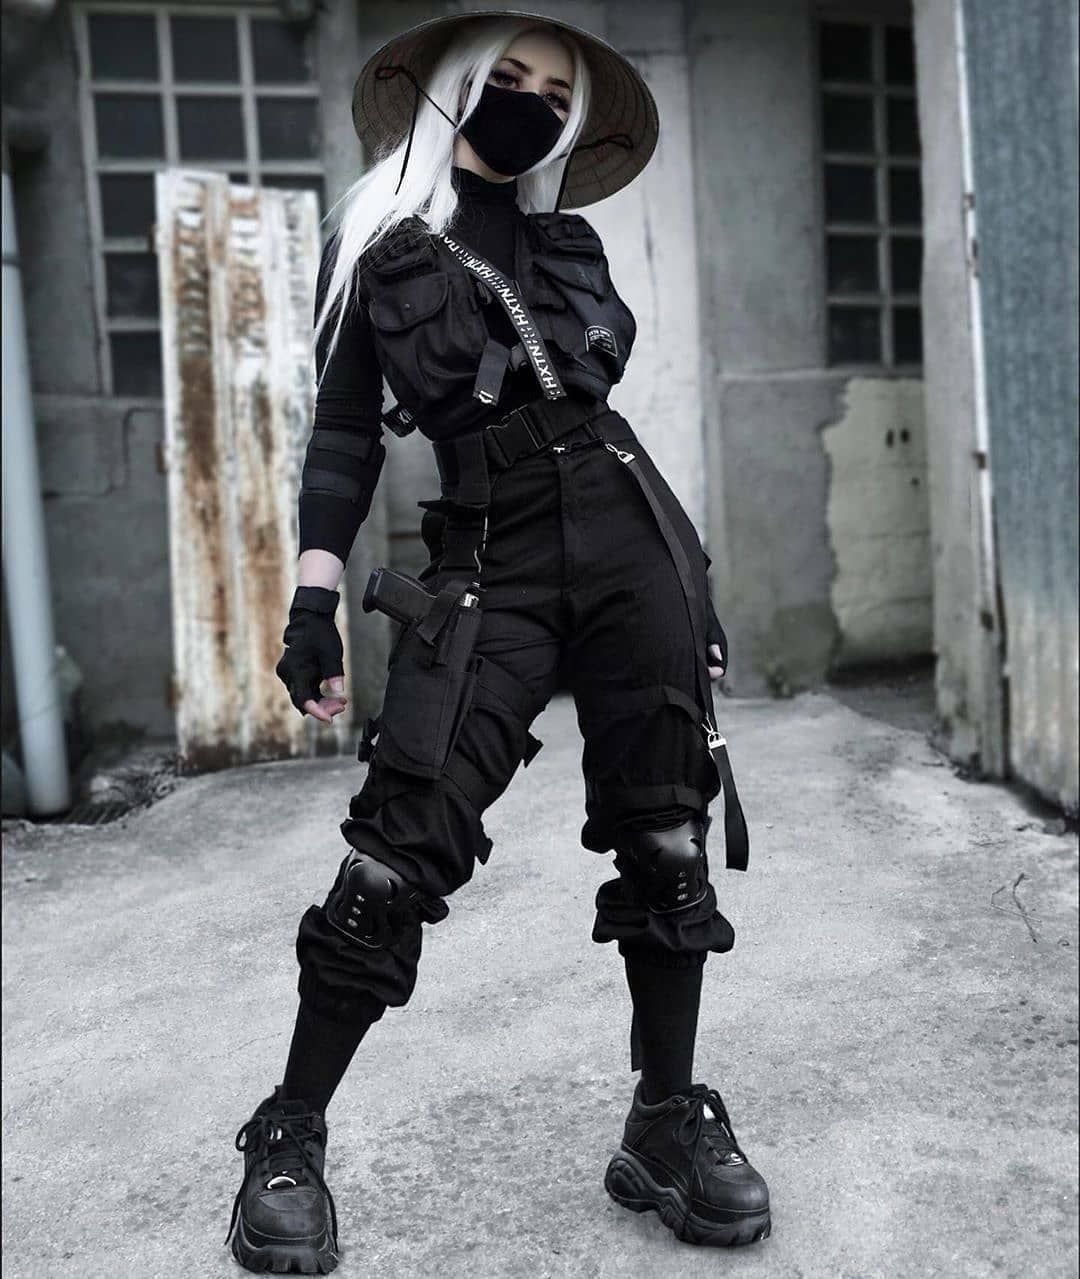 Gta online cyberpunk outfit фото 63